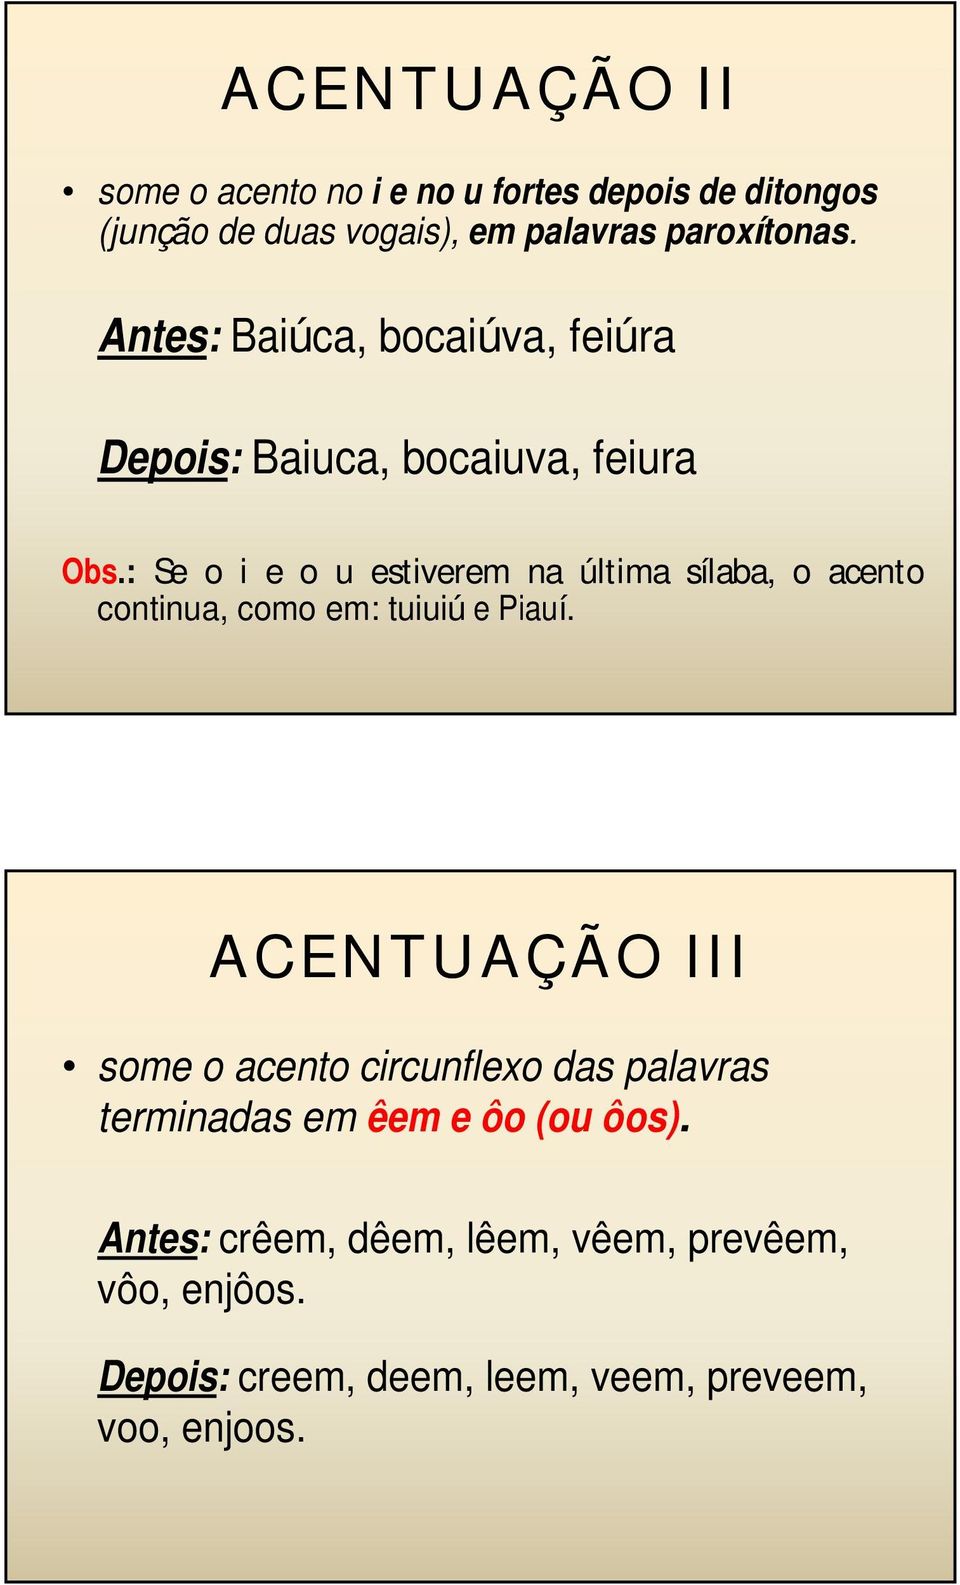 : Se o i e o u estiverem na última sílaba, o acento continua, como em: tuiuiú e Piauí.